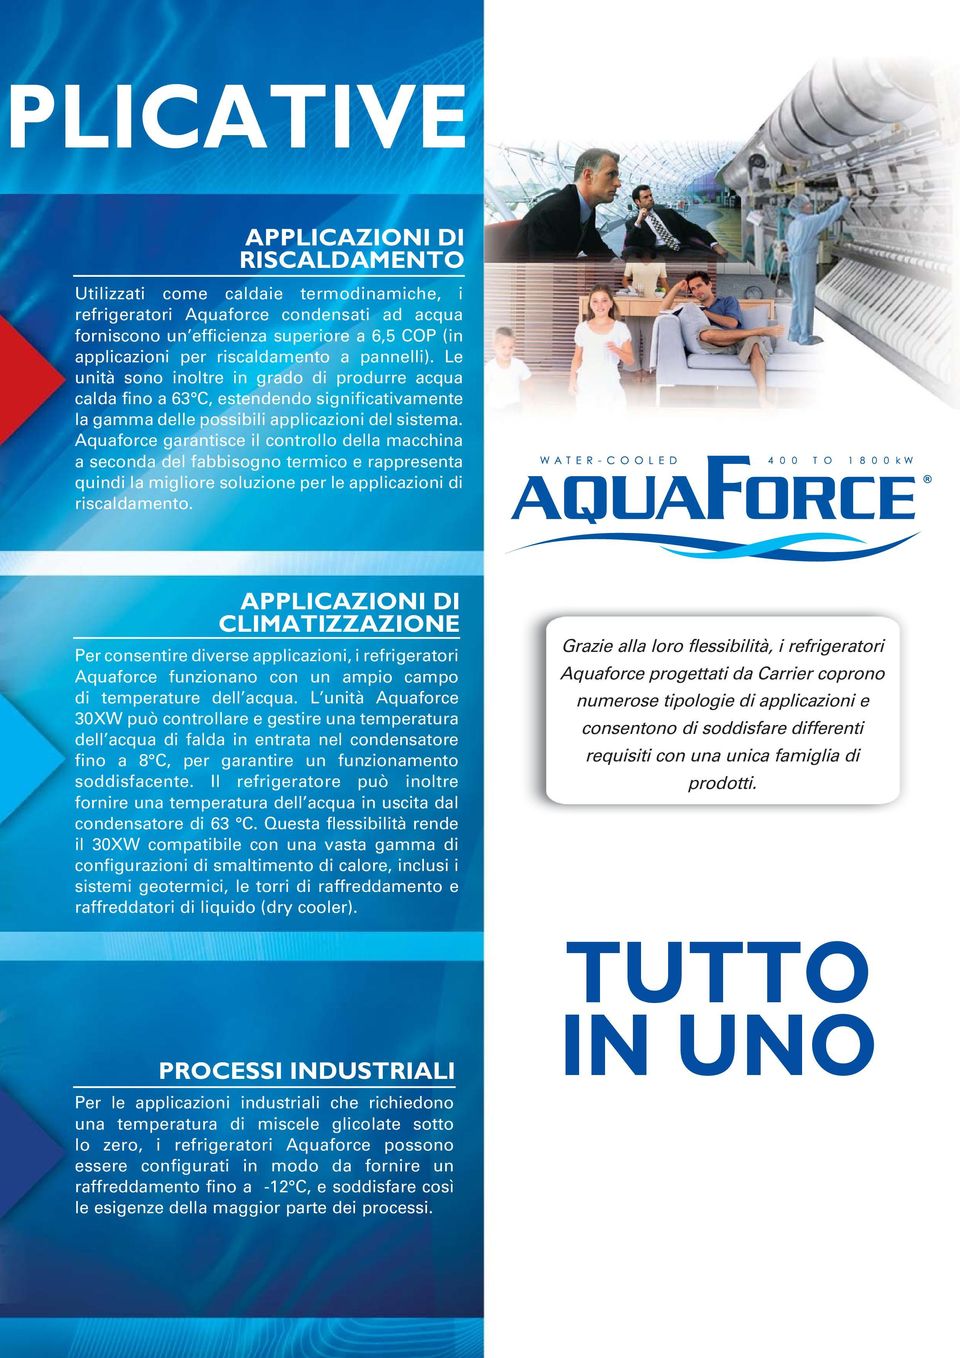 Aquaforce garantisce il controllo della macchina a seconda del fabbisogno termico e rappresenta quindi la migliore soluzione per le applicazioni di riscaldamento.